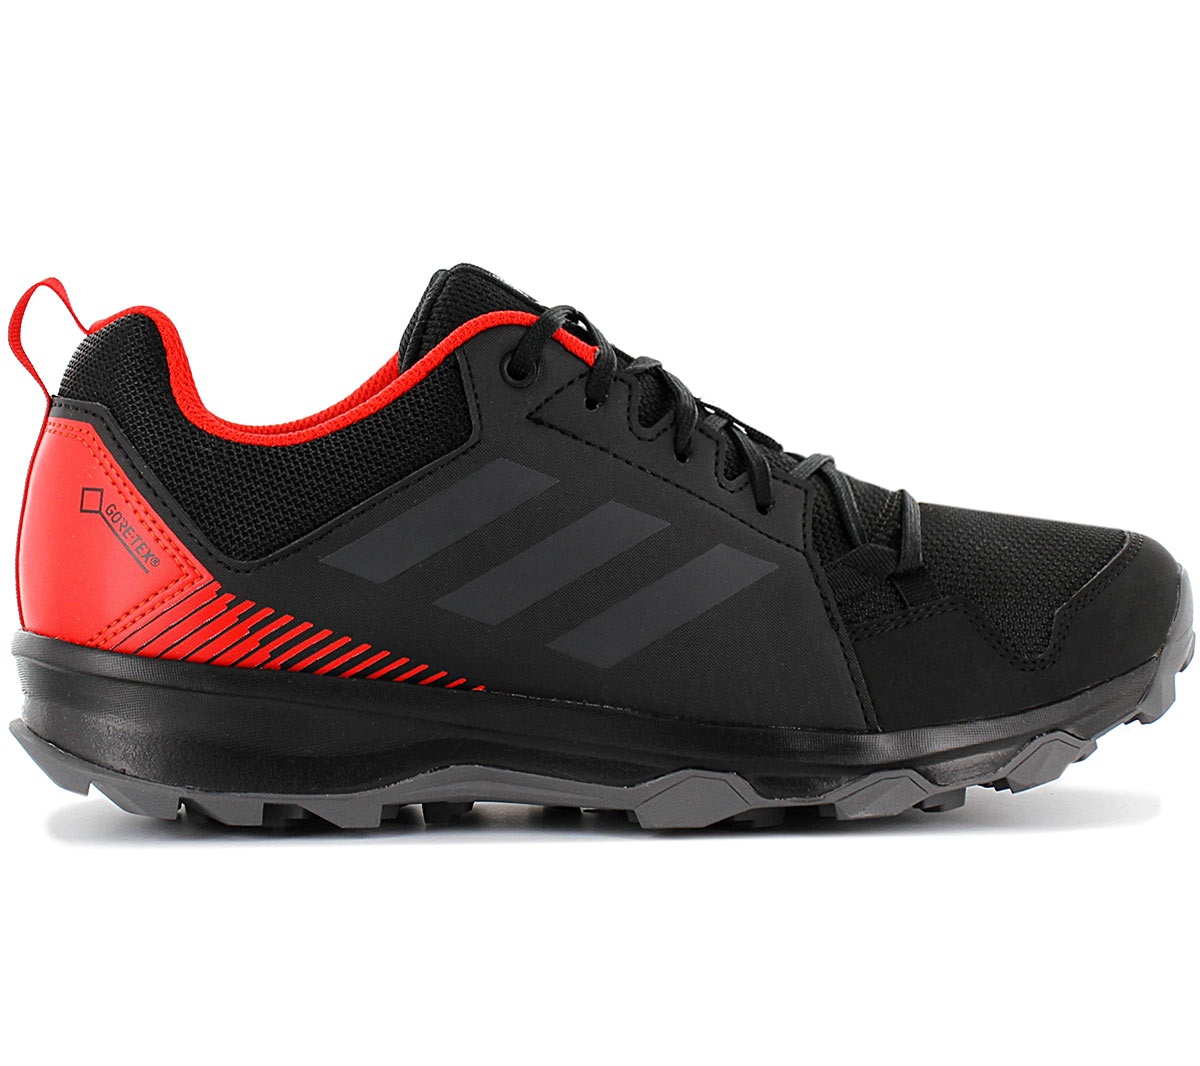 Adidas terrex Tracerocker gtx - gore-tex - BC0434 Hombre Senderismo Zapatos  | eBay